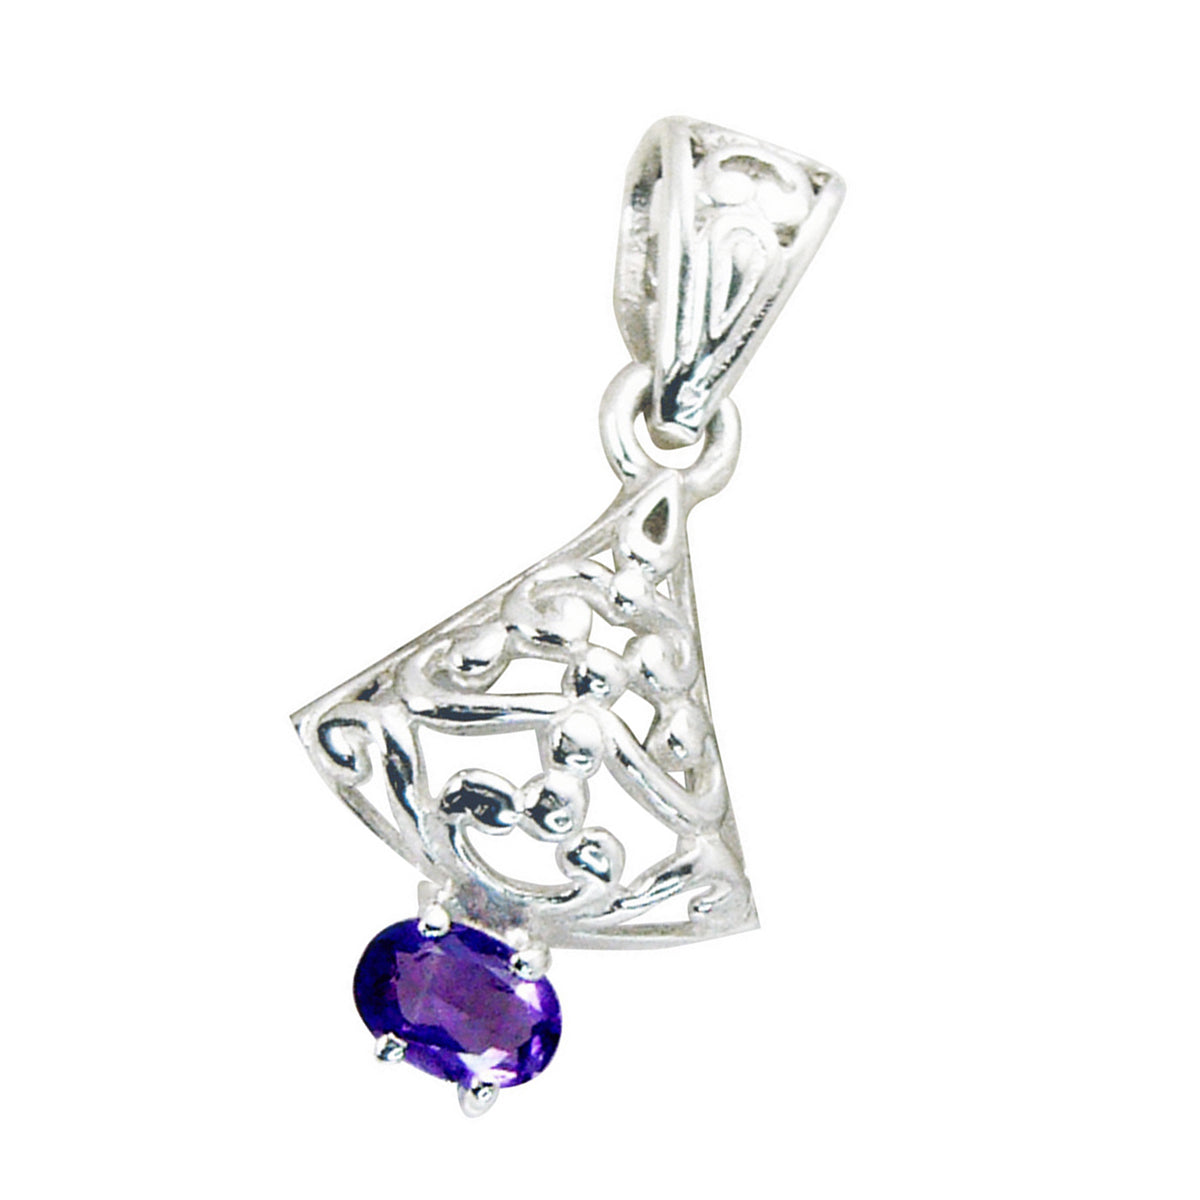 Riyo Exquisite Gems Anhänger, oval, facettiert, violetter Amethyst, massives Silber, Geschenk für Hochzeit